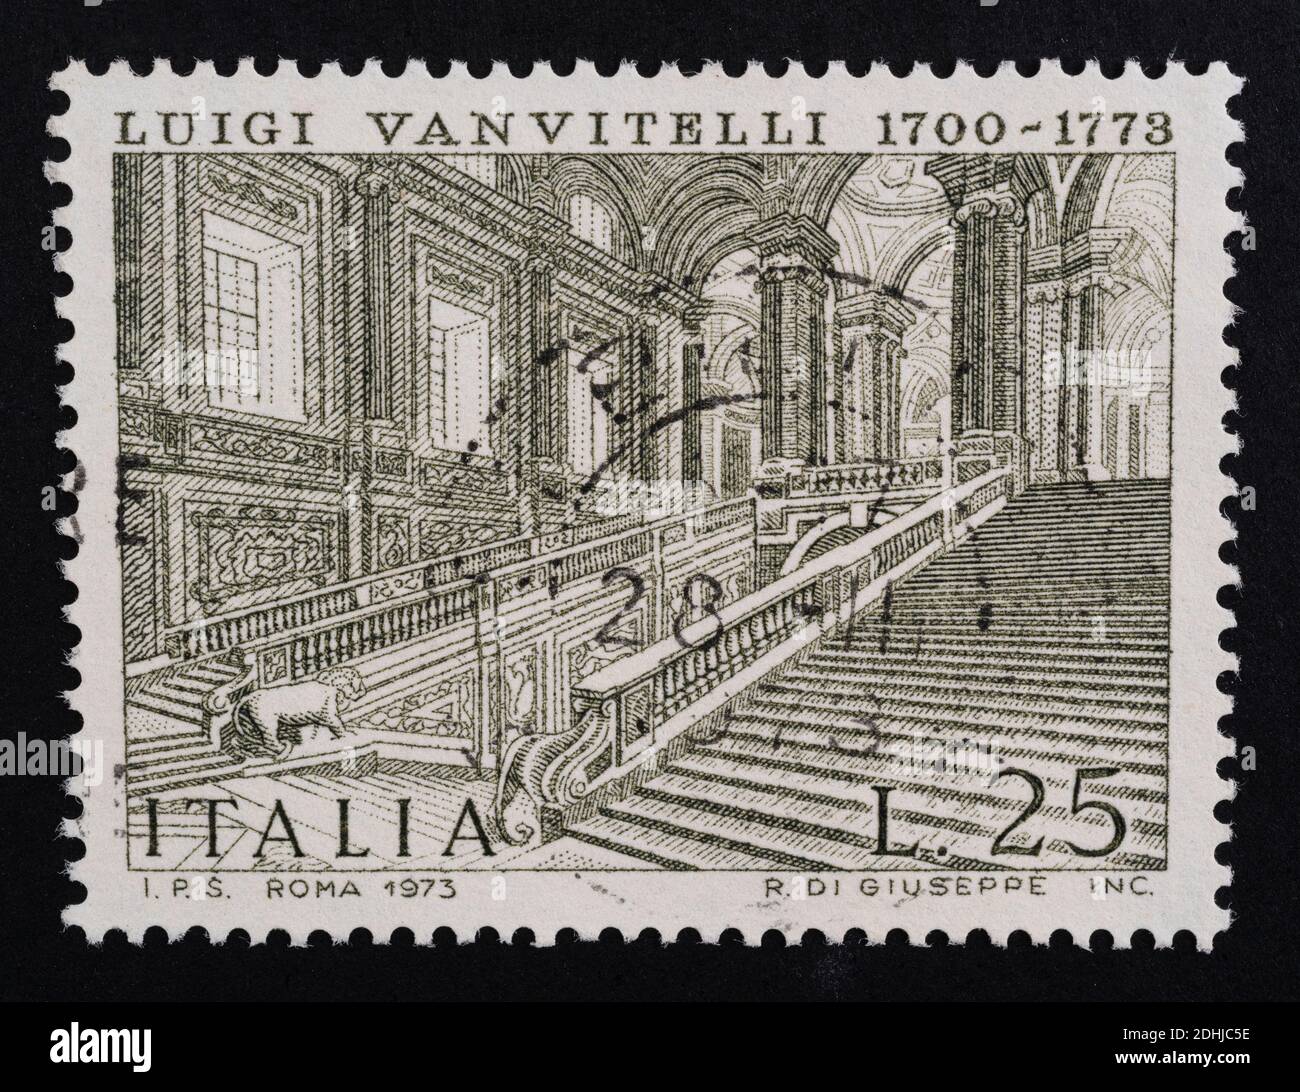 Udine, Italia. 10 dicembre 2020. Commemorazione di Luigi Vanvitelli su francobollo italiano Foto Stock